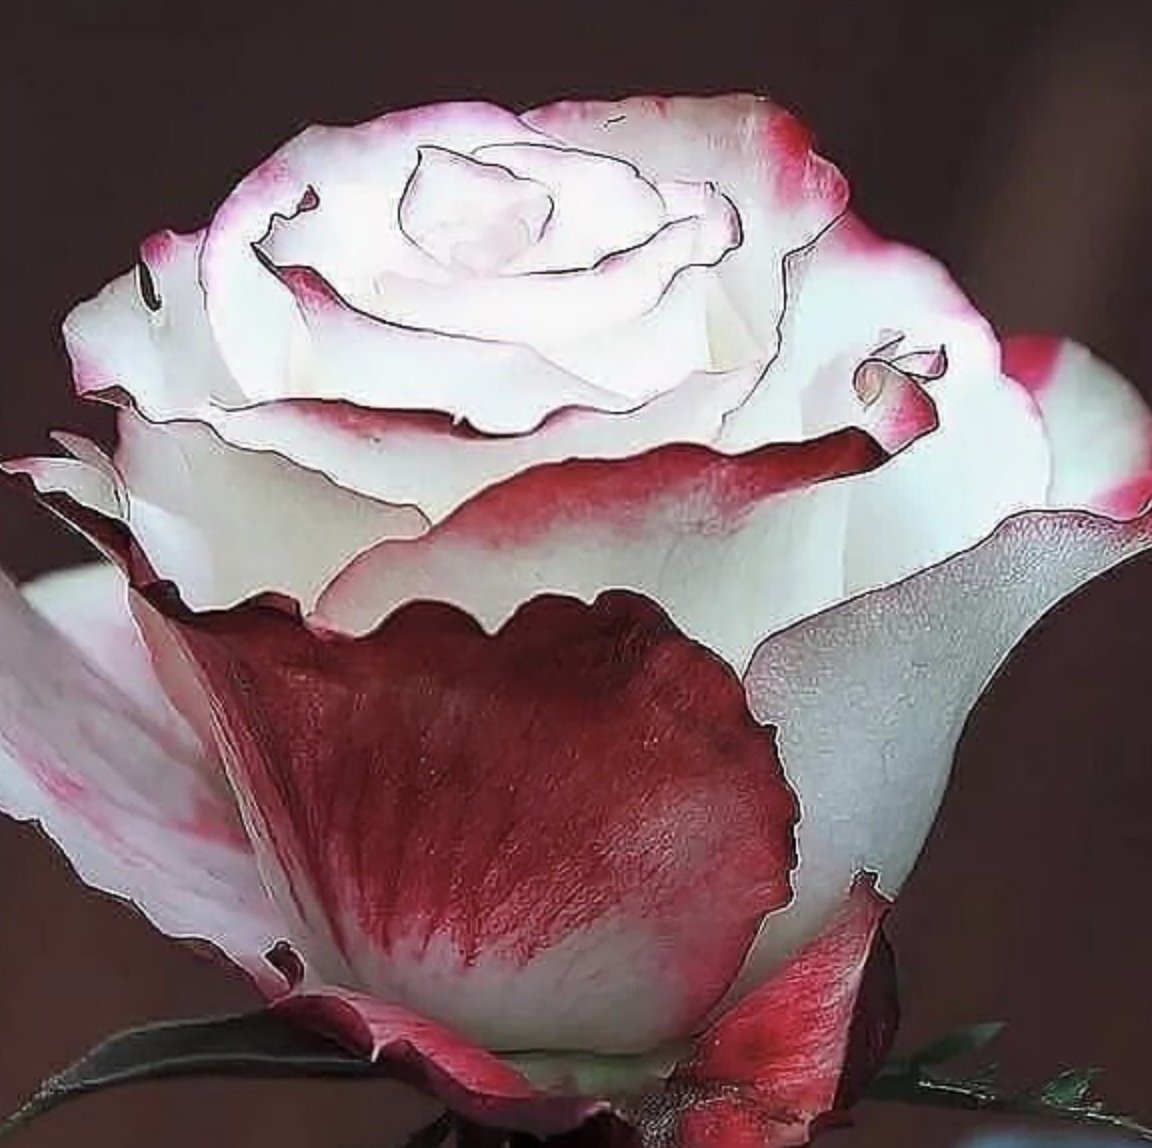 Розы бело красные название